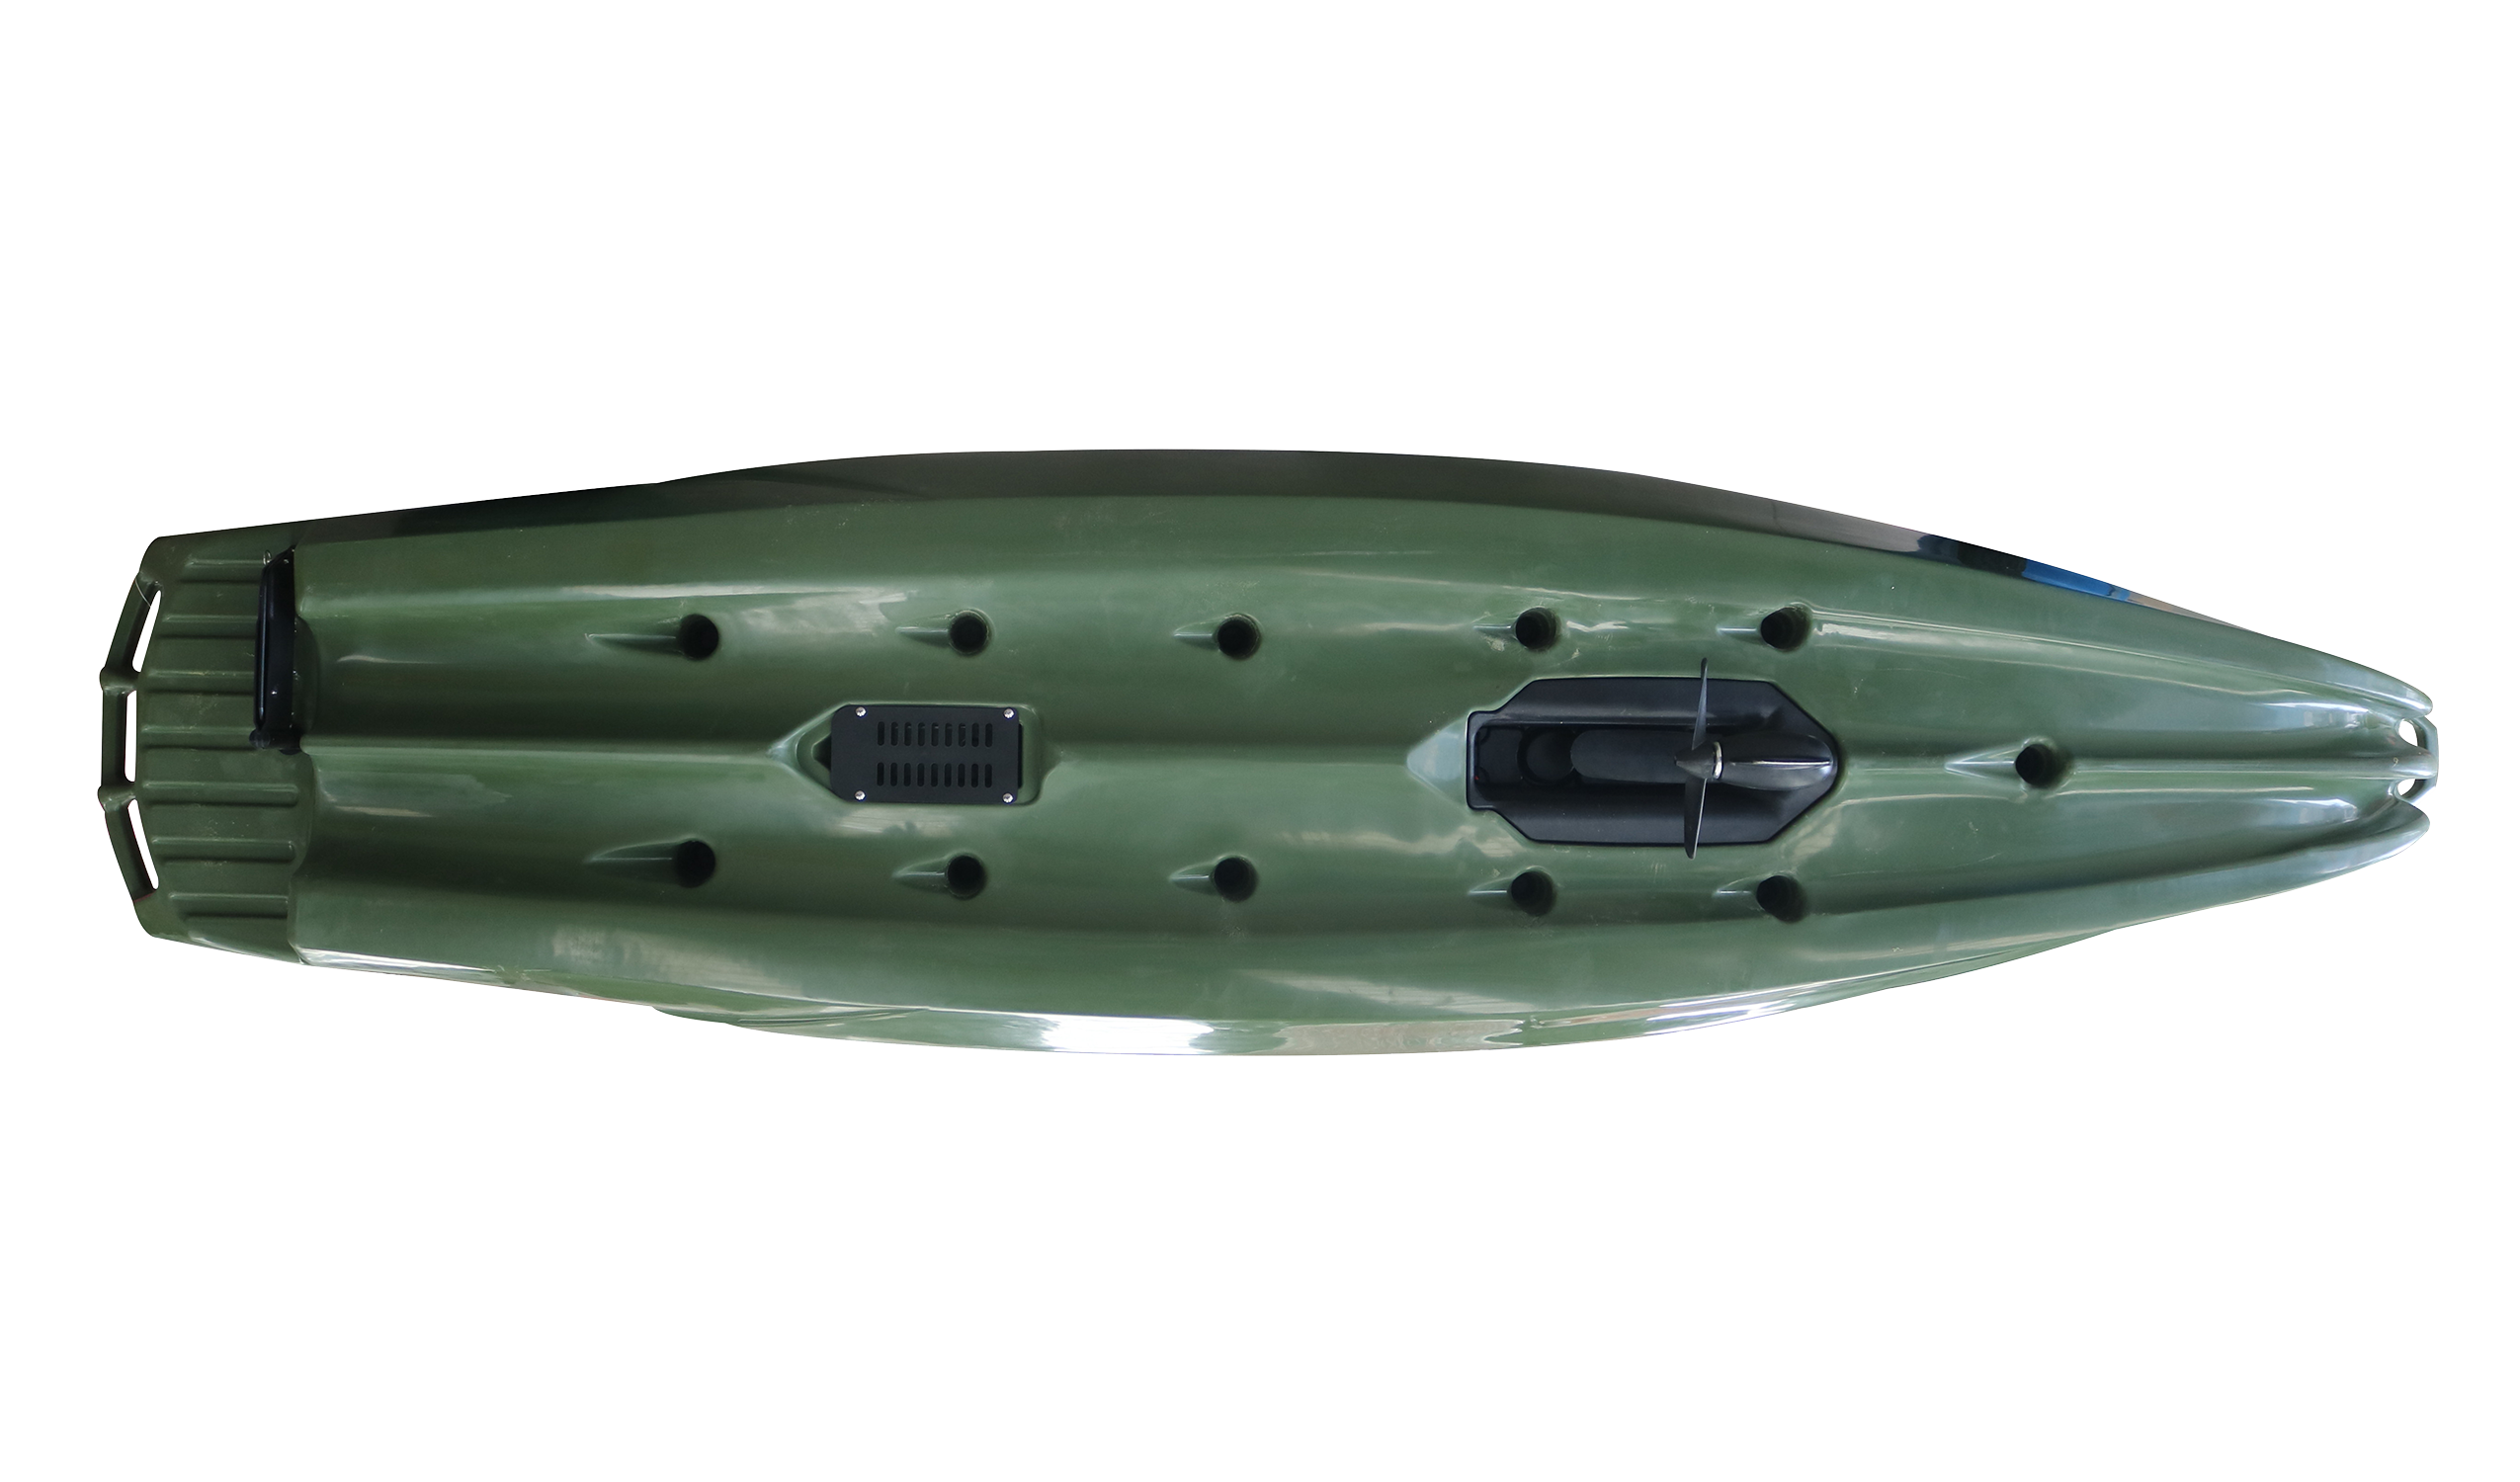 Promozione PD 390-green: kayak + sedile girevole fino al 10 marzo